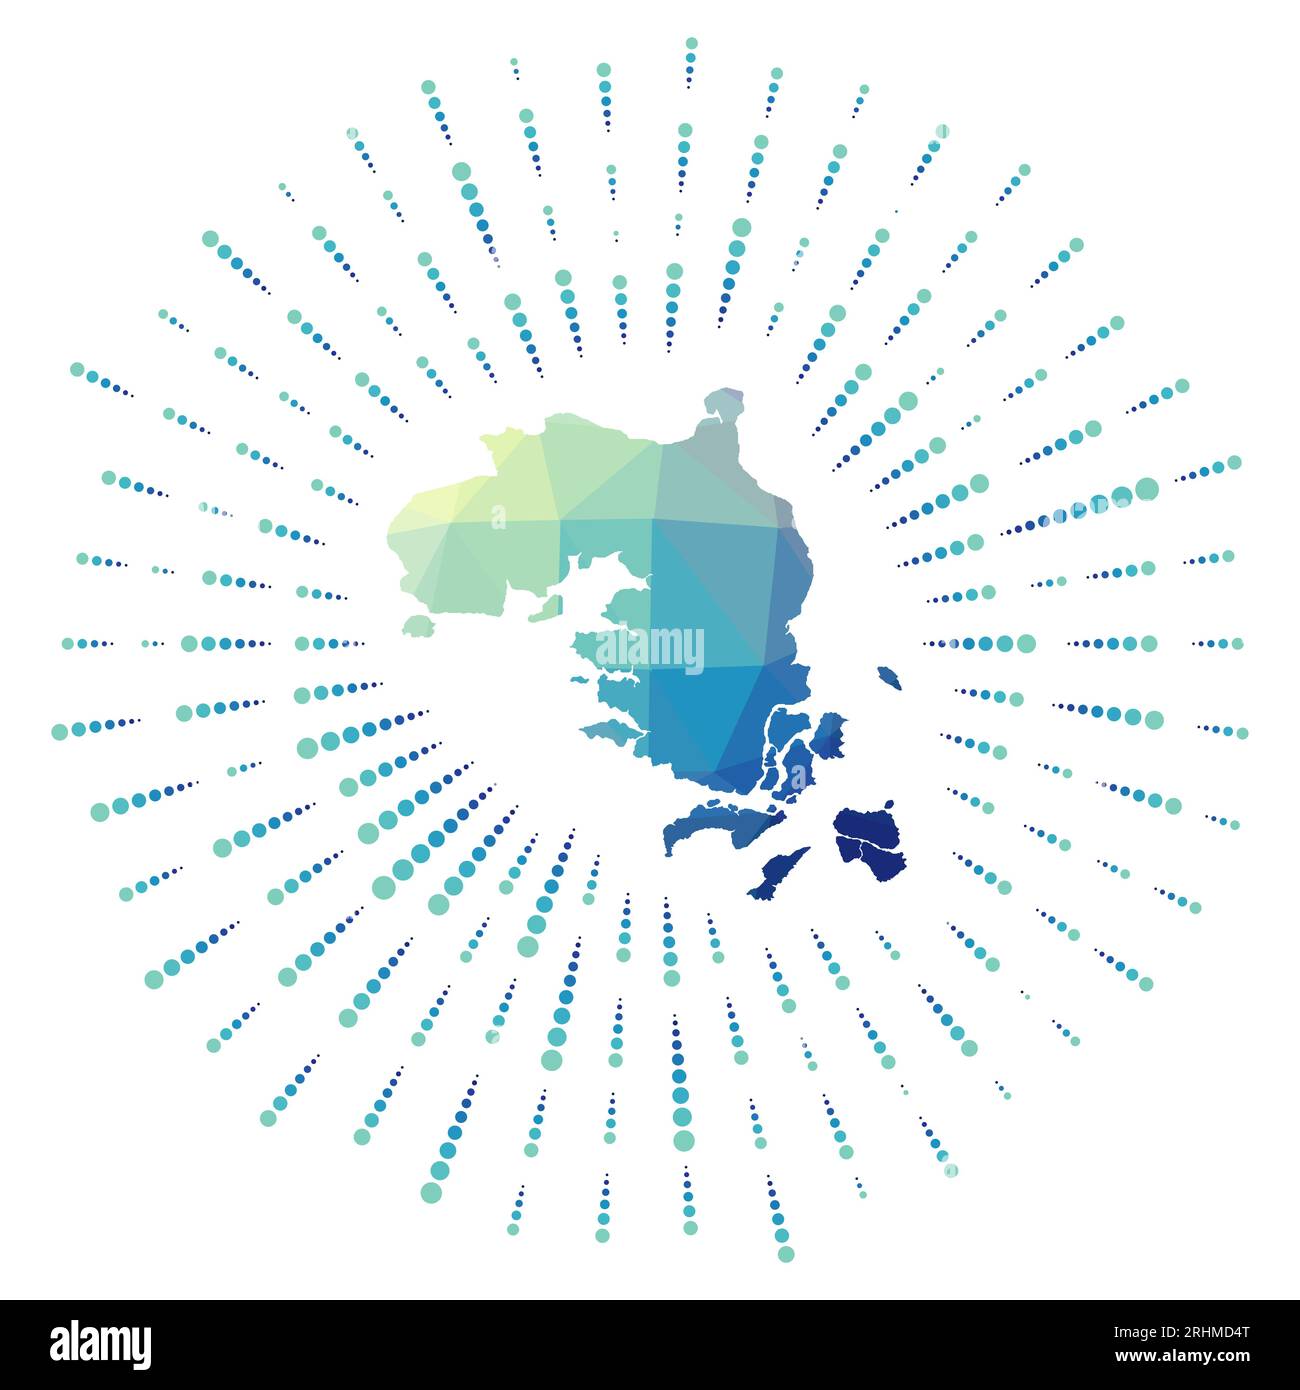 Die Form der Bintan-Insel, polygonaler Sonnenaufgang. Karte der Insel mit bunten Sternrochen. Bintan-Illustration in den Bereichen Digital, Technologie, Internet, Netzwerk Stock Vektor